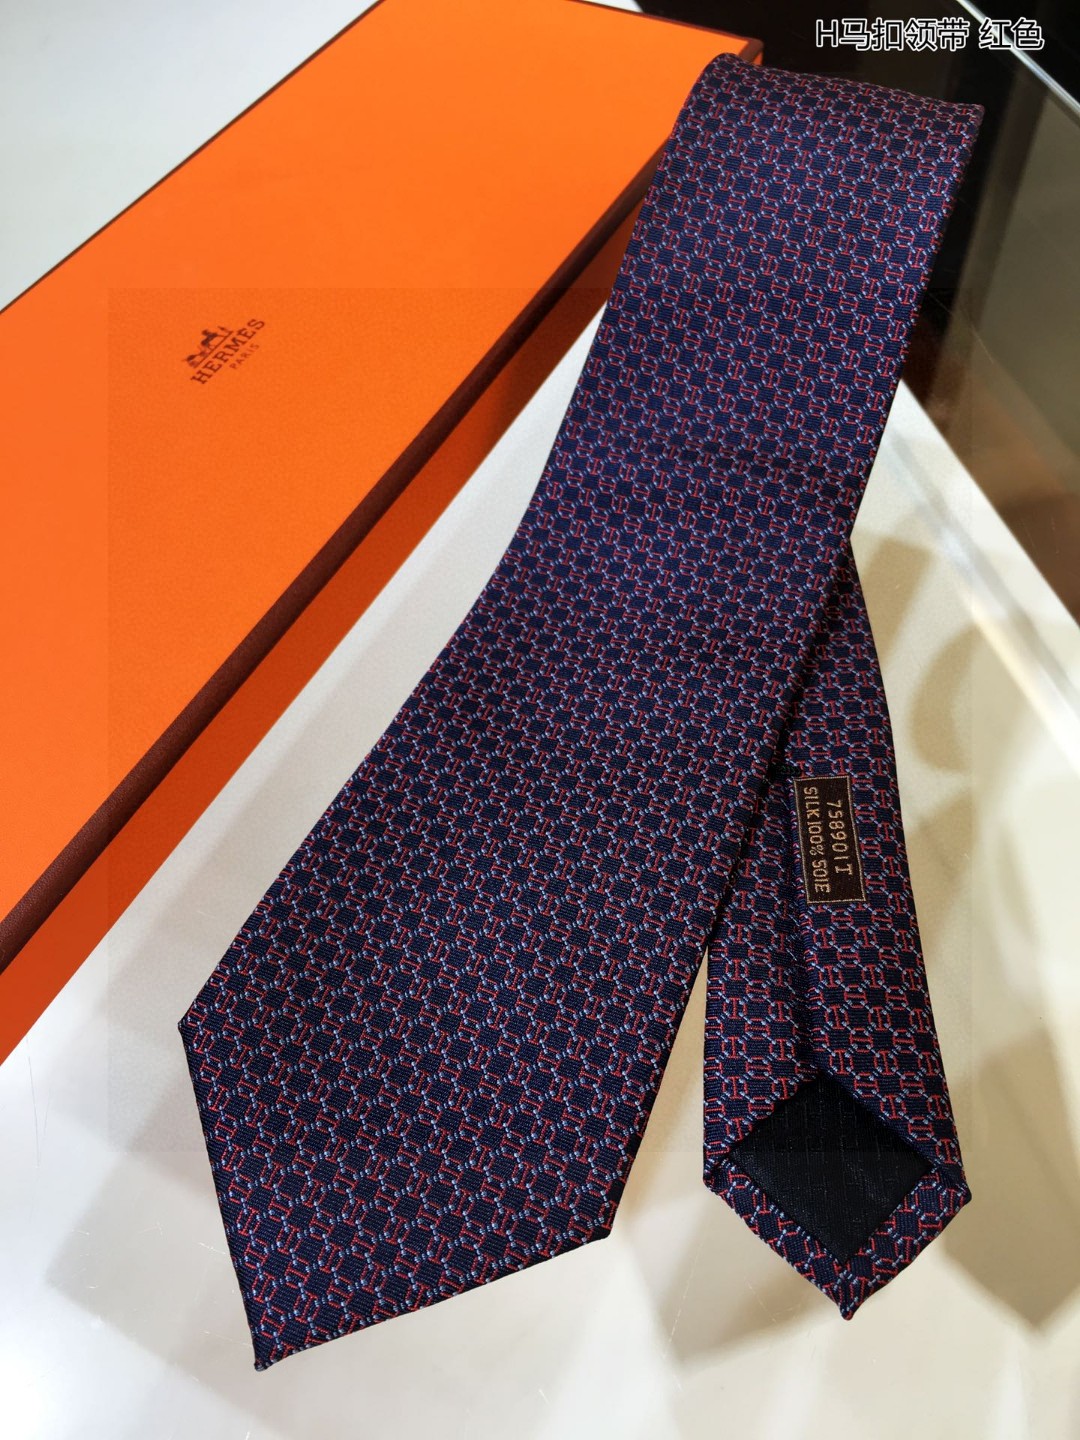 上新男士新款领带系列H马扣领带稀有H家每年都有一千条不同印花的领带面世从最初的多以几何图案表现骑术活动为